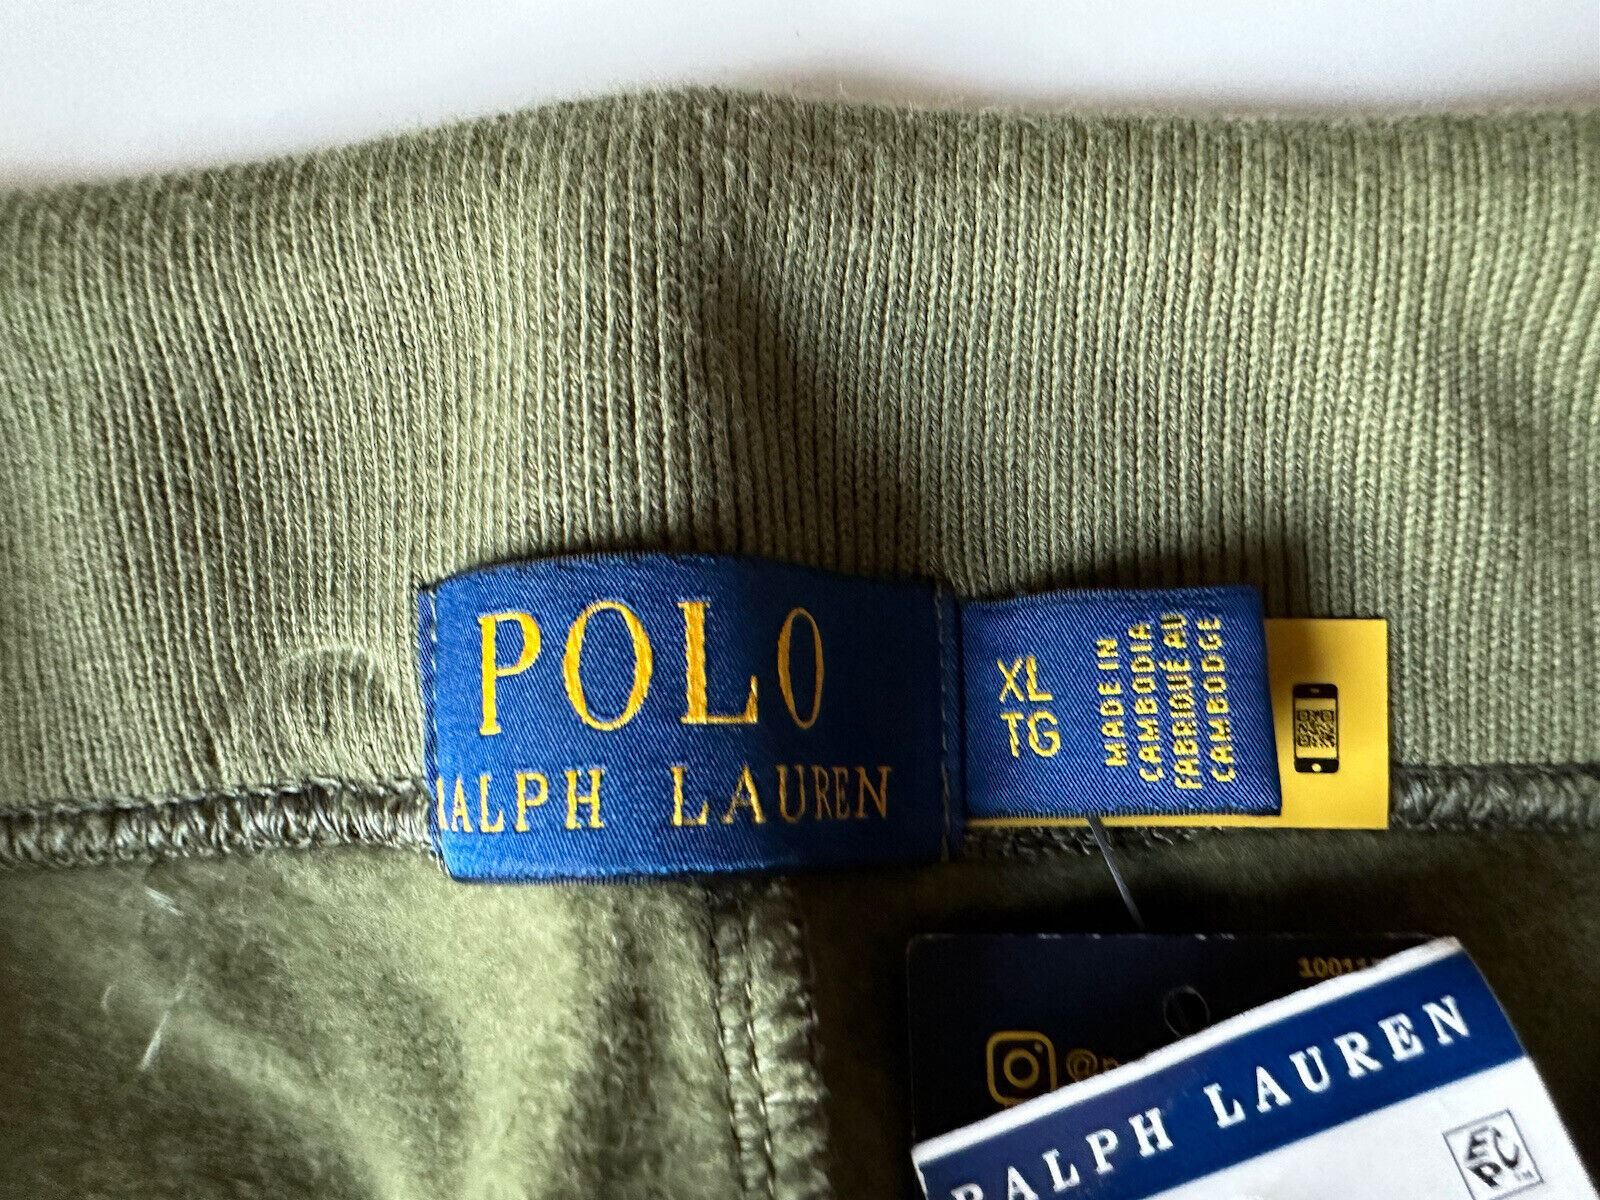 Neu mit Etikett: 138 $ Polo Ralph Lauren Herren-Freizeithose mit Polo-Logo in Grün, XL/TG